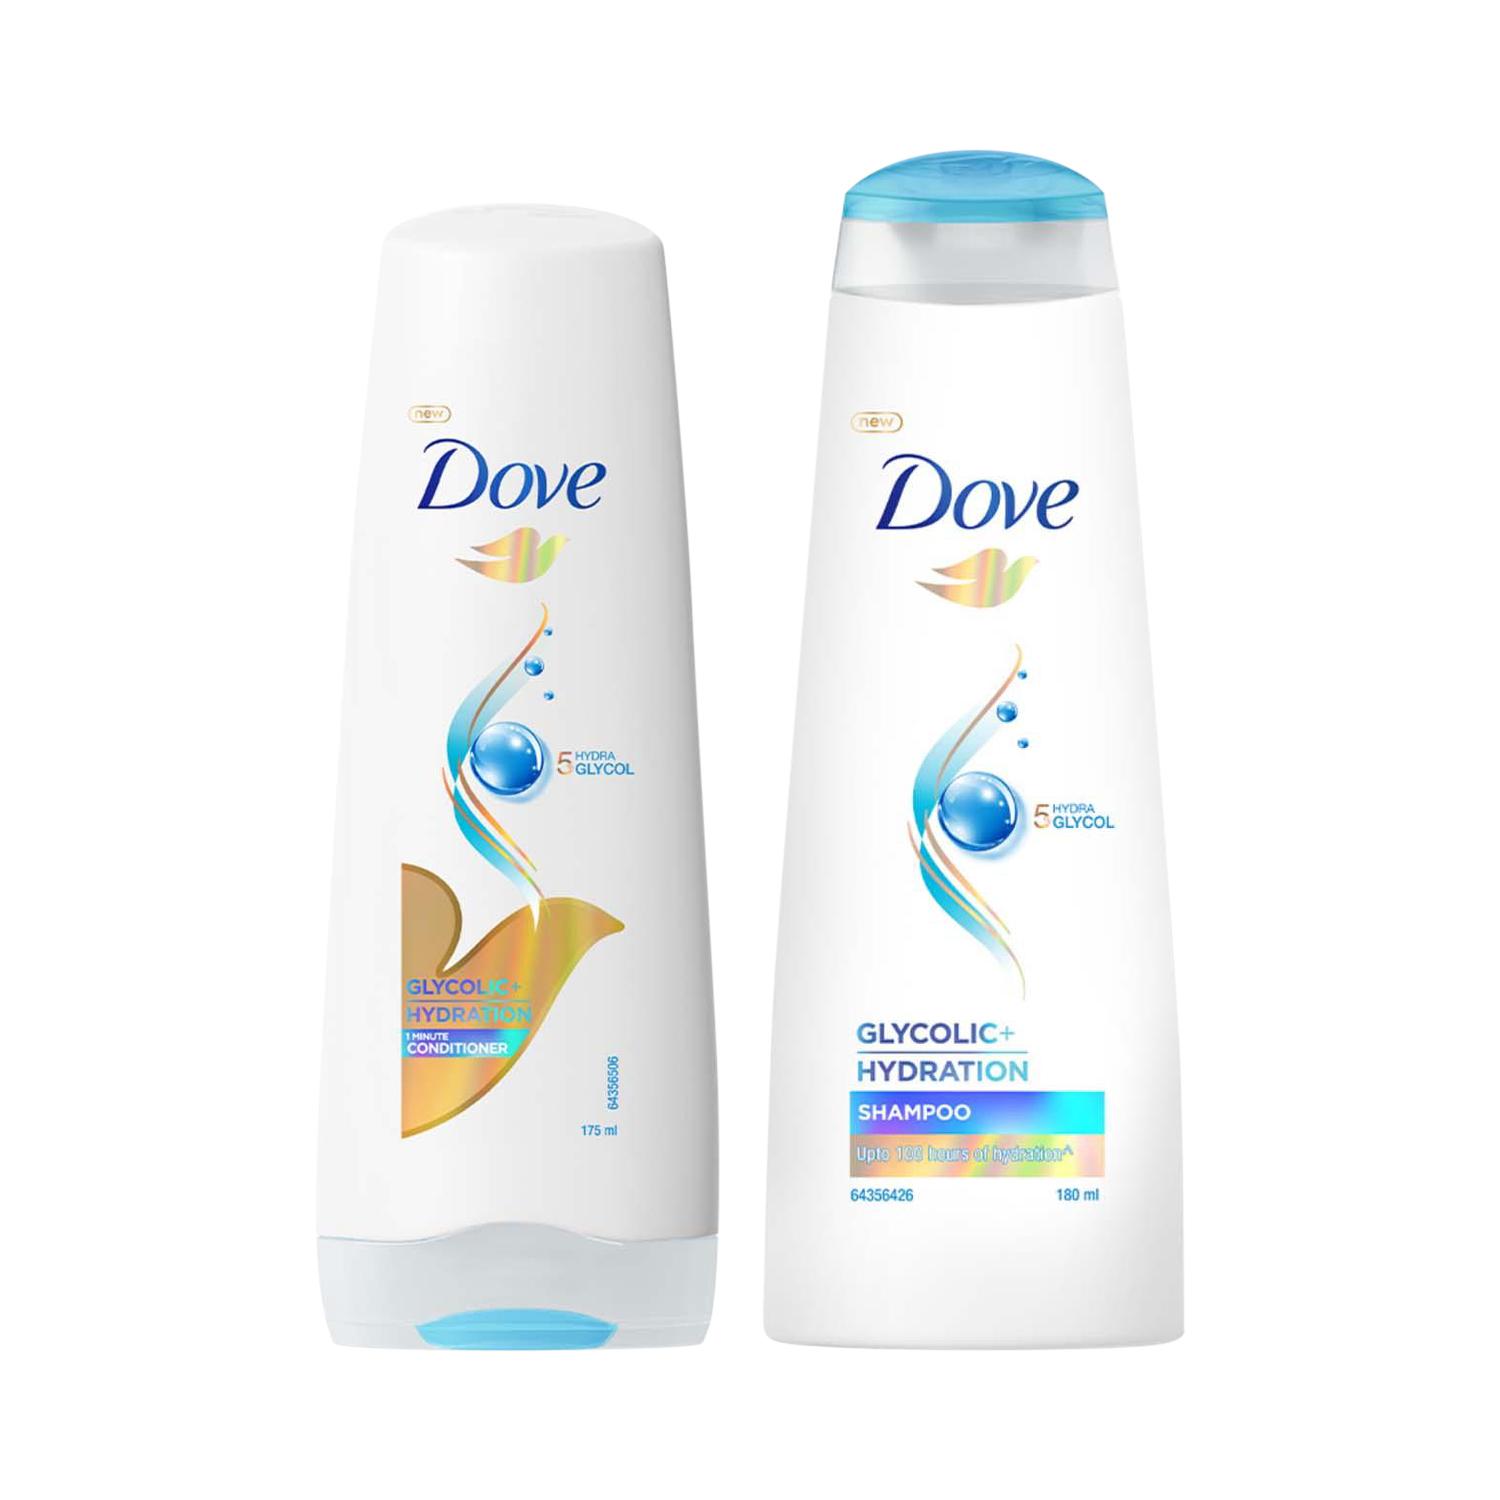 Dove | Dove Glycolic Hydration Combo - Shampoo (180 ml) + Conditioner (175 ml)